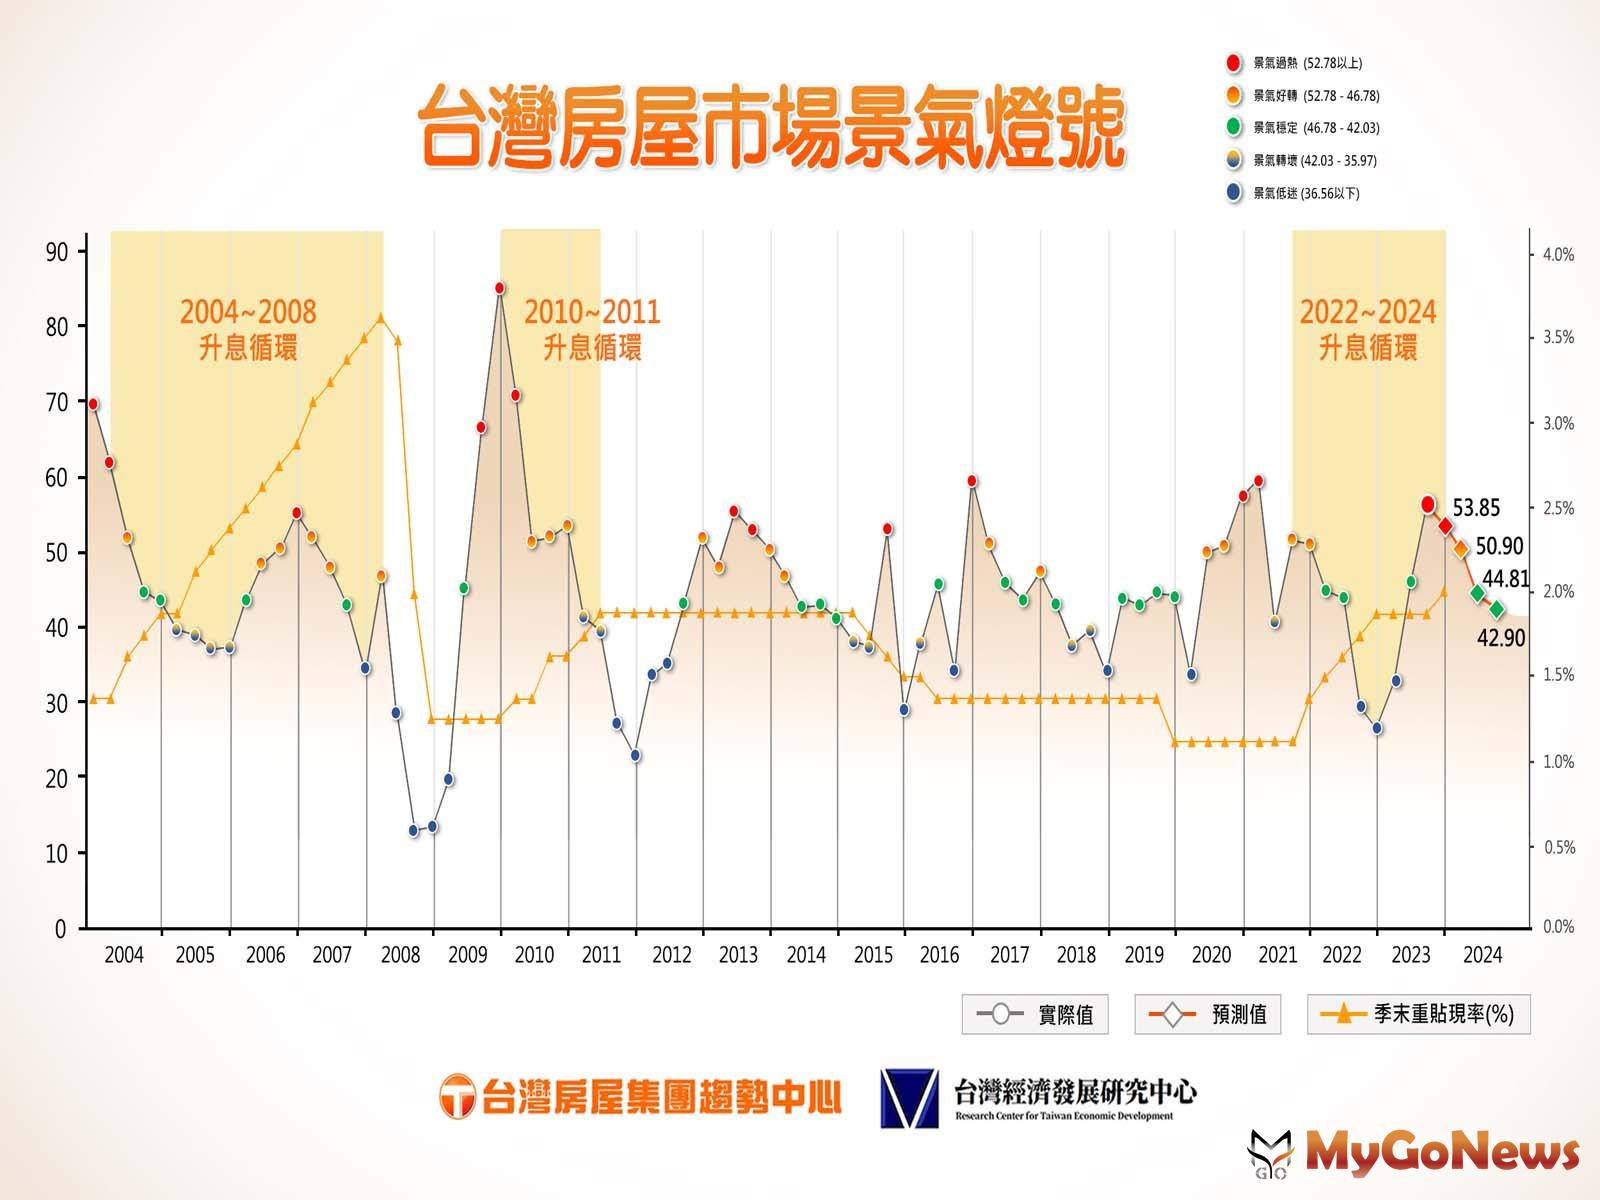 台灣房屋市場景氣燈號下半年轉綠